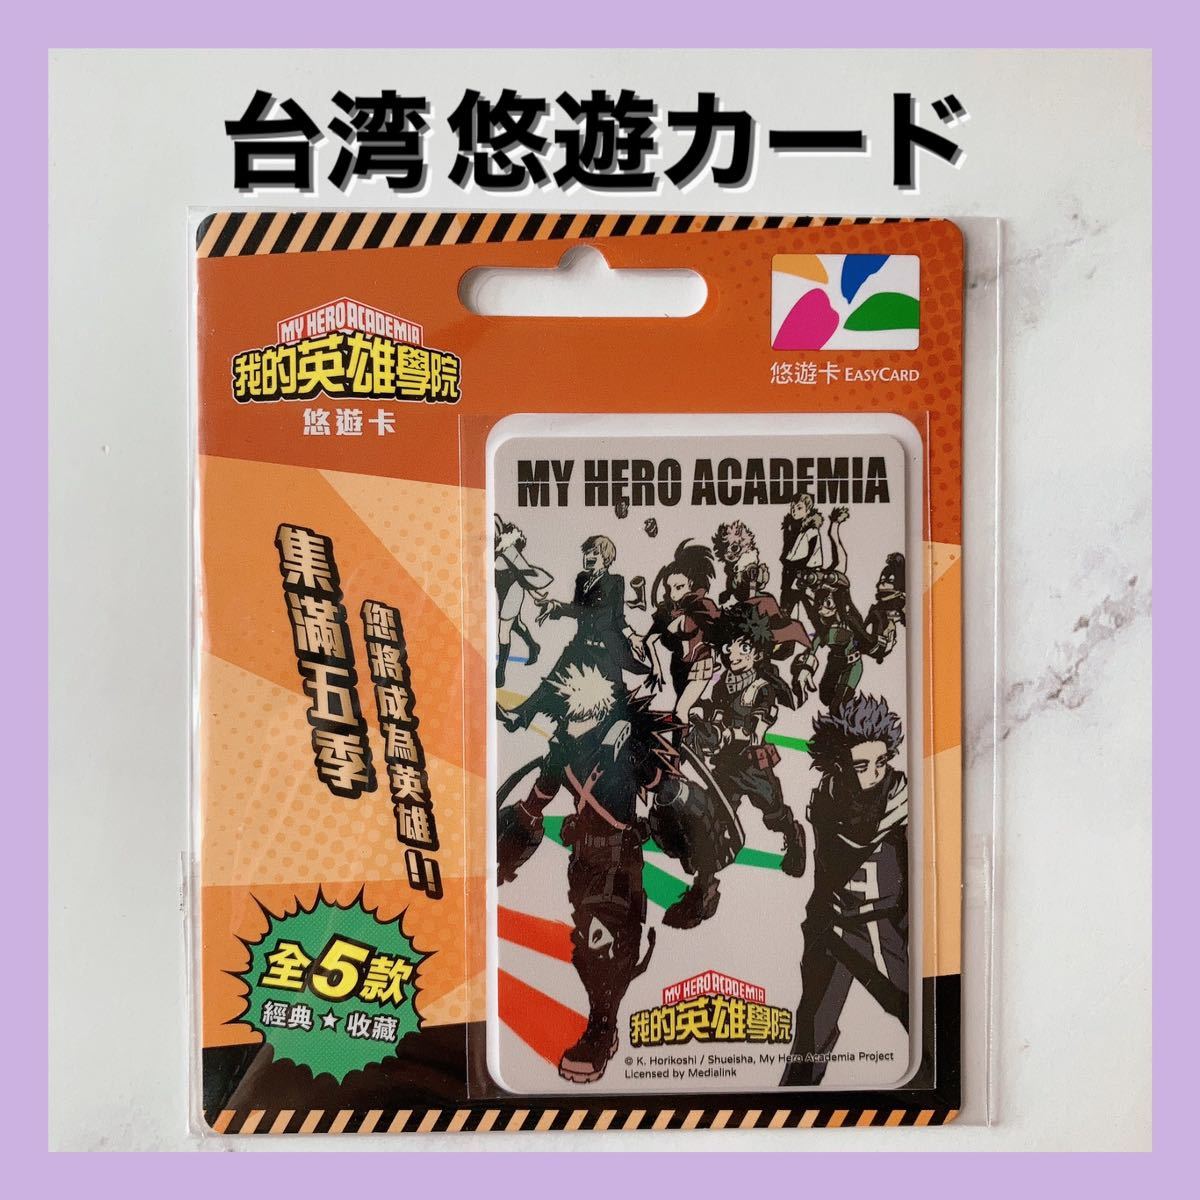 送料無料 僕のヒーローアカデミア 台湾 悠遊カード easy card 交通系ICカード 5_画像1